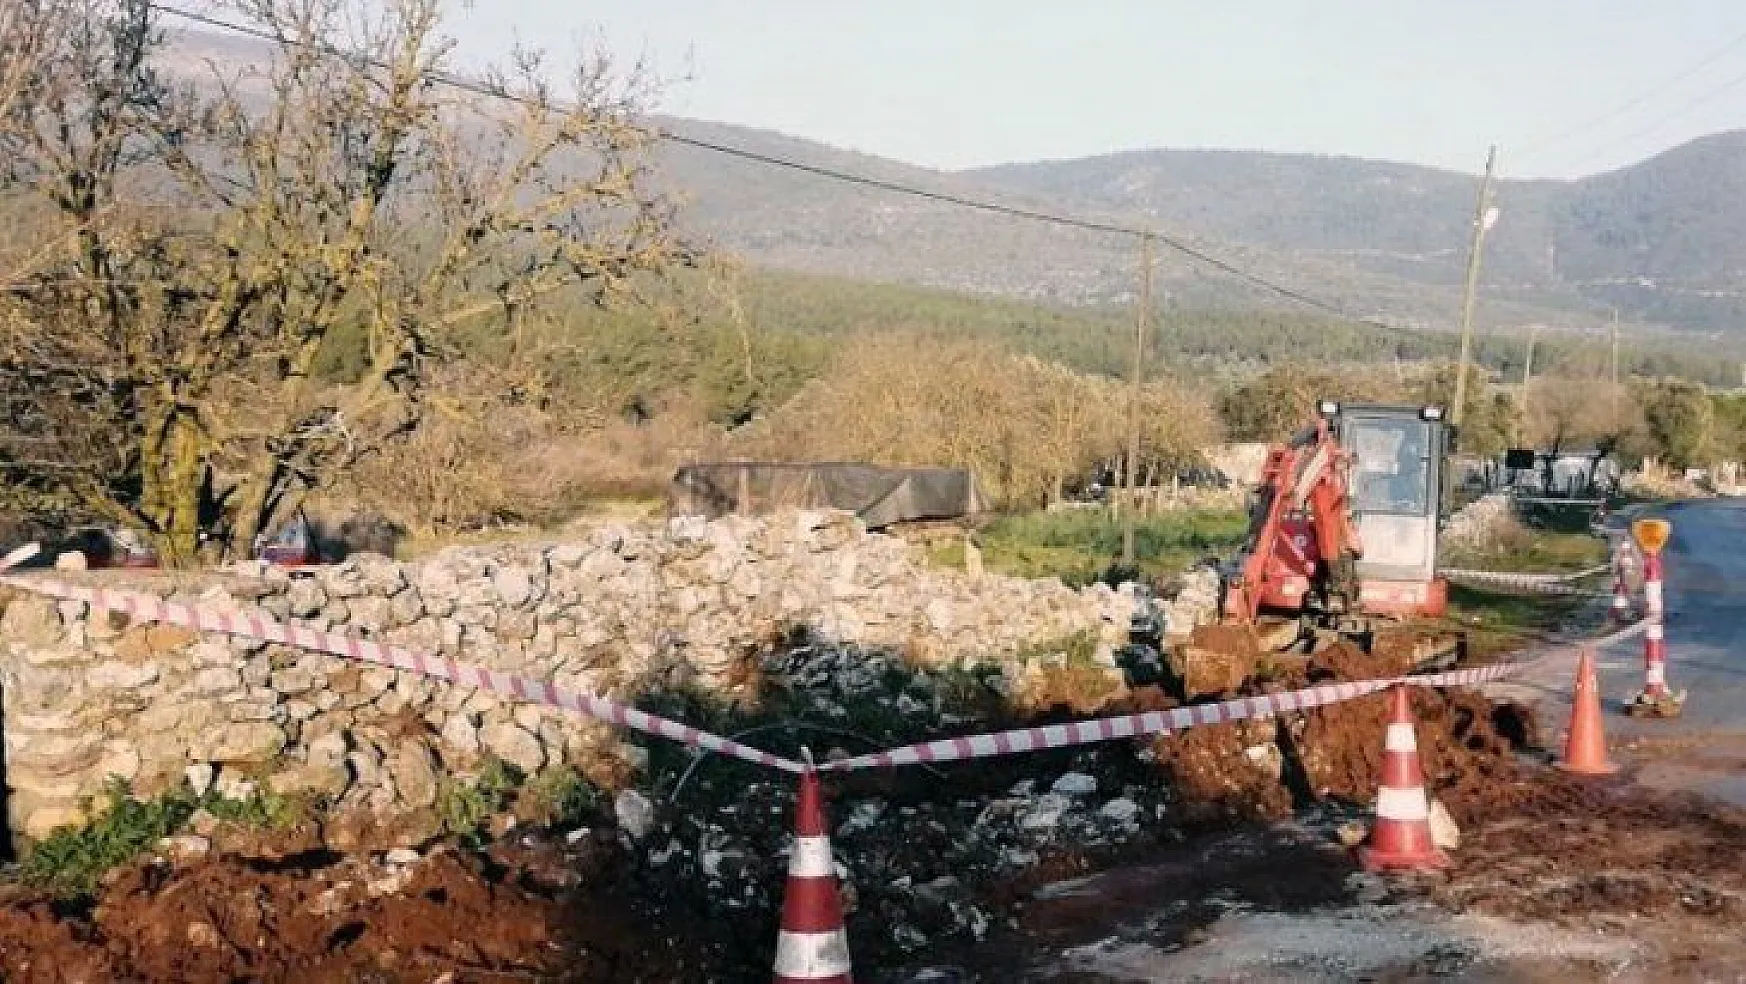 İlmin-Kızılağaç Mahallesi'nin içme suyu hattı yenilendi